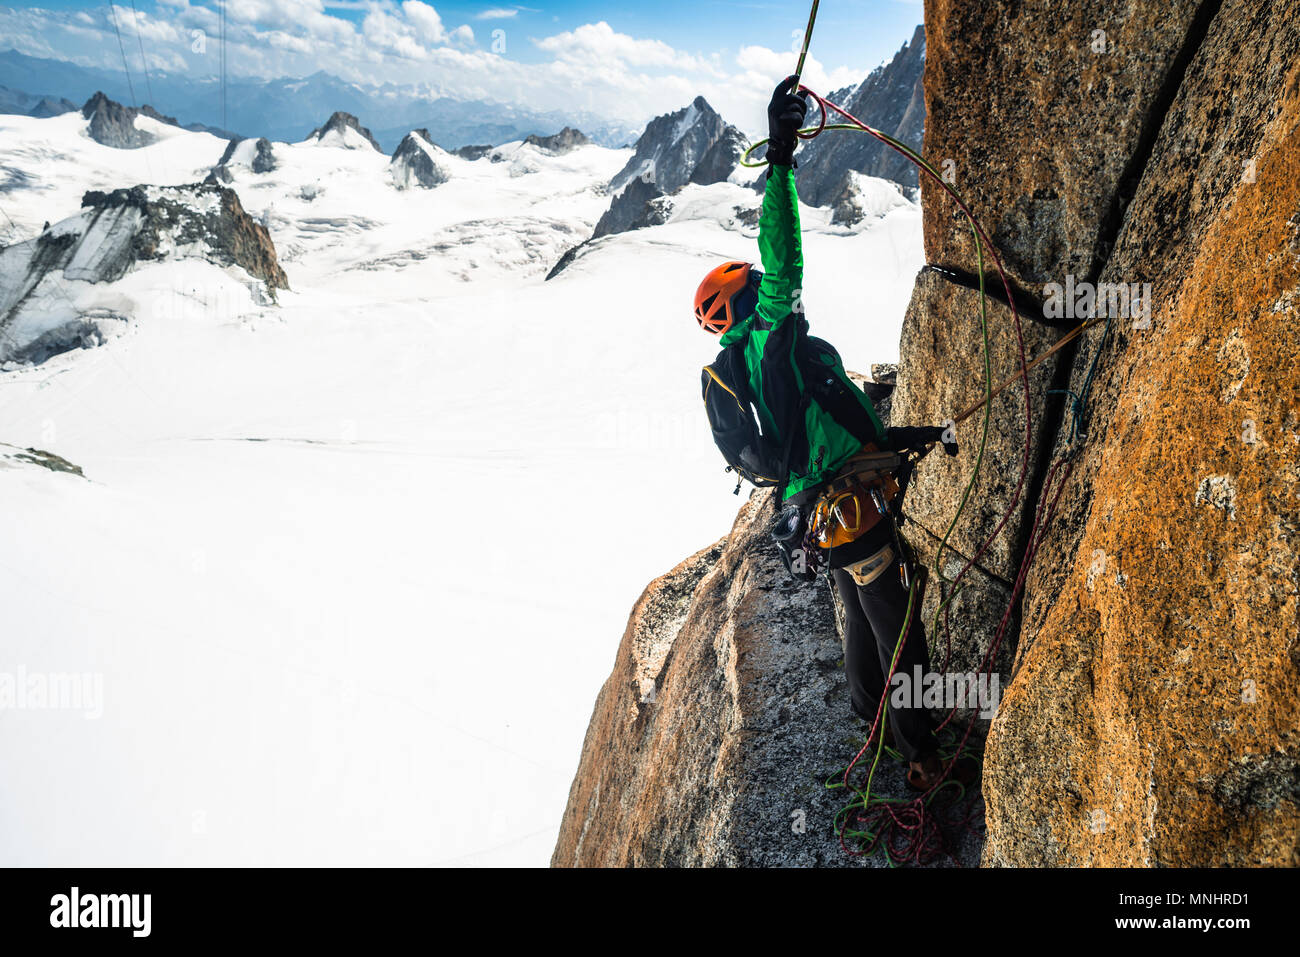 Vista lateral del escalador aventurero preparando para rappel desde la ruta de escalada, Aiguille du Midi, Haute-Savoie, Francia Foto de stock